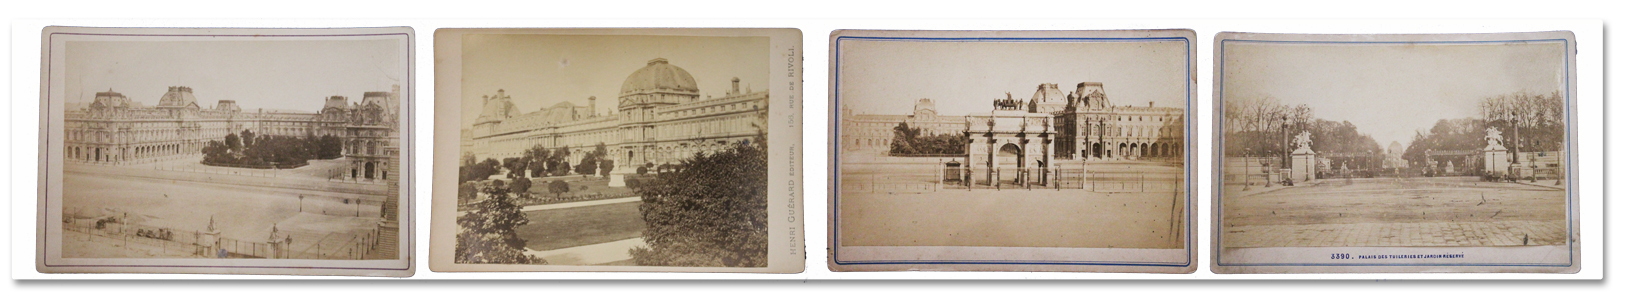 photographie, tirage, albumine, cabinet, louvre, tuileries, 1860, paris, vintage